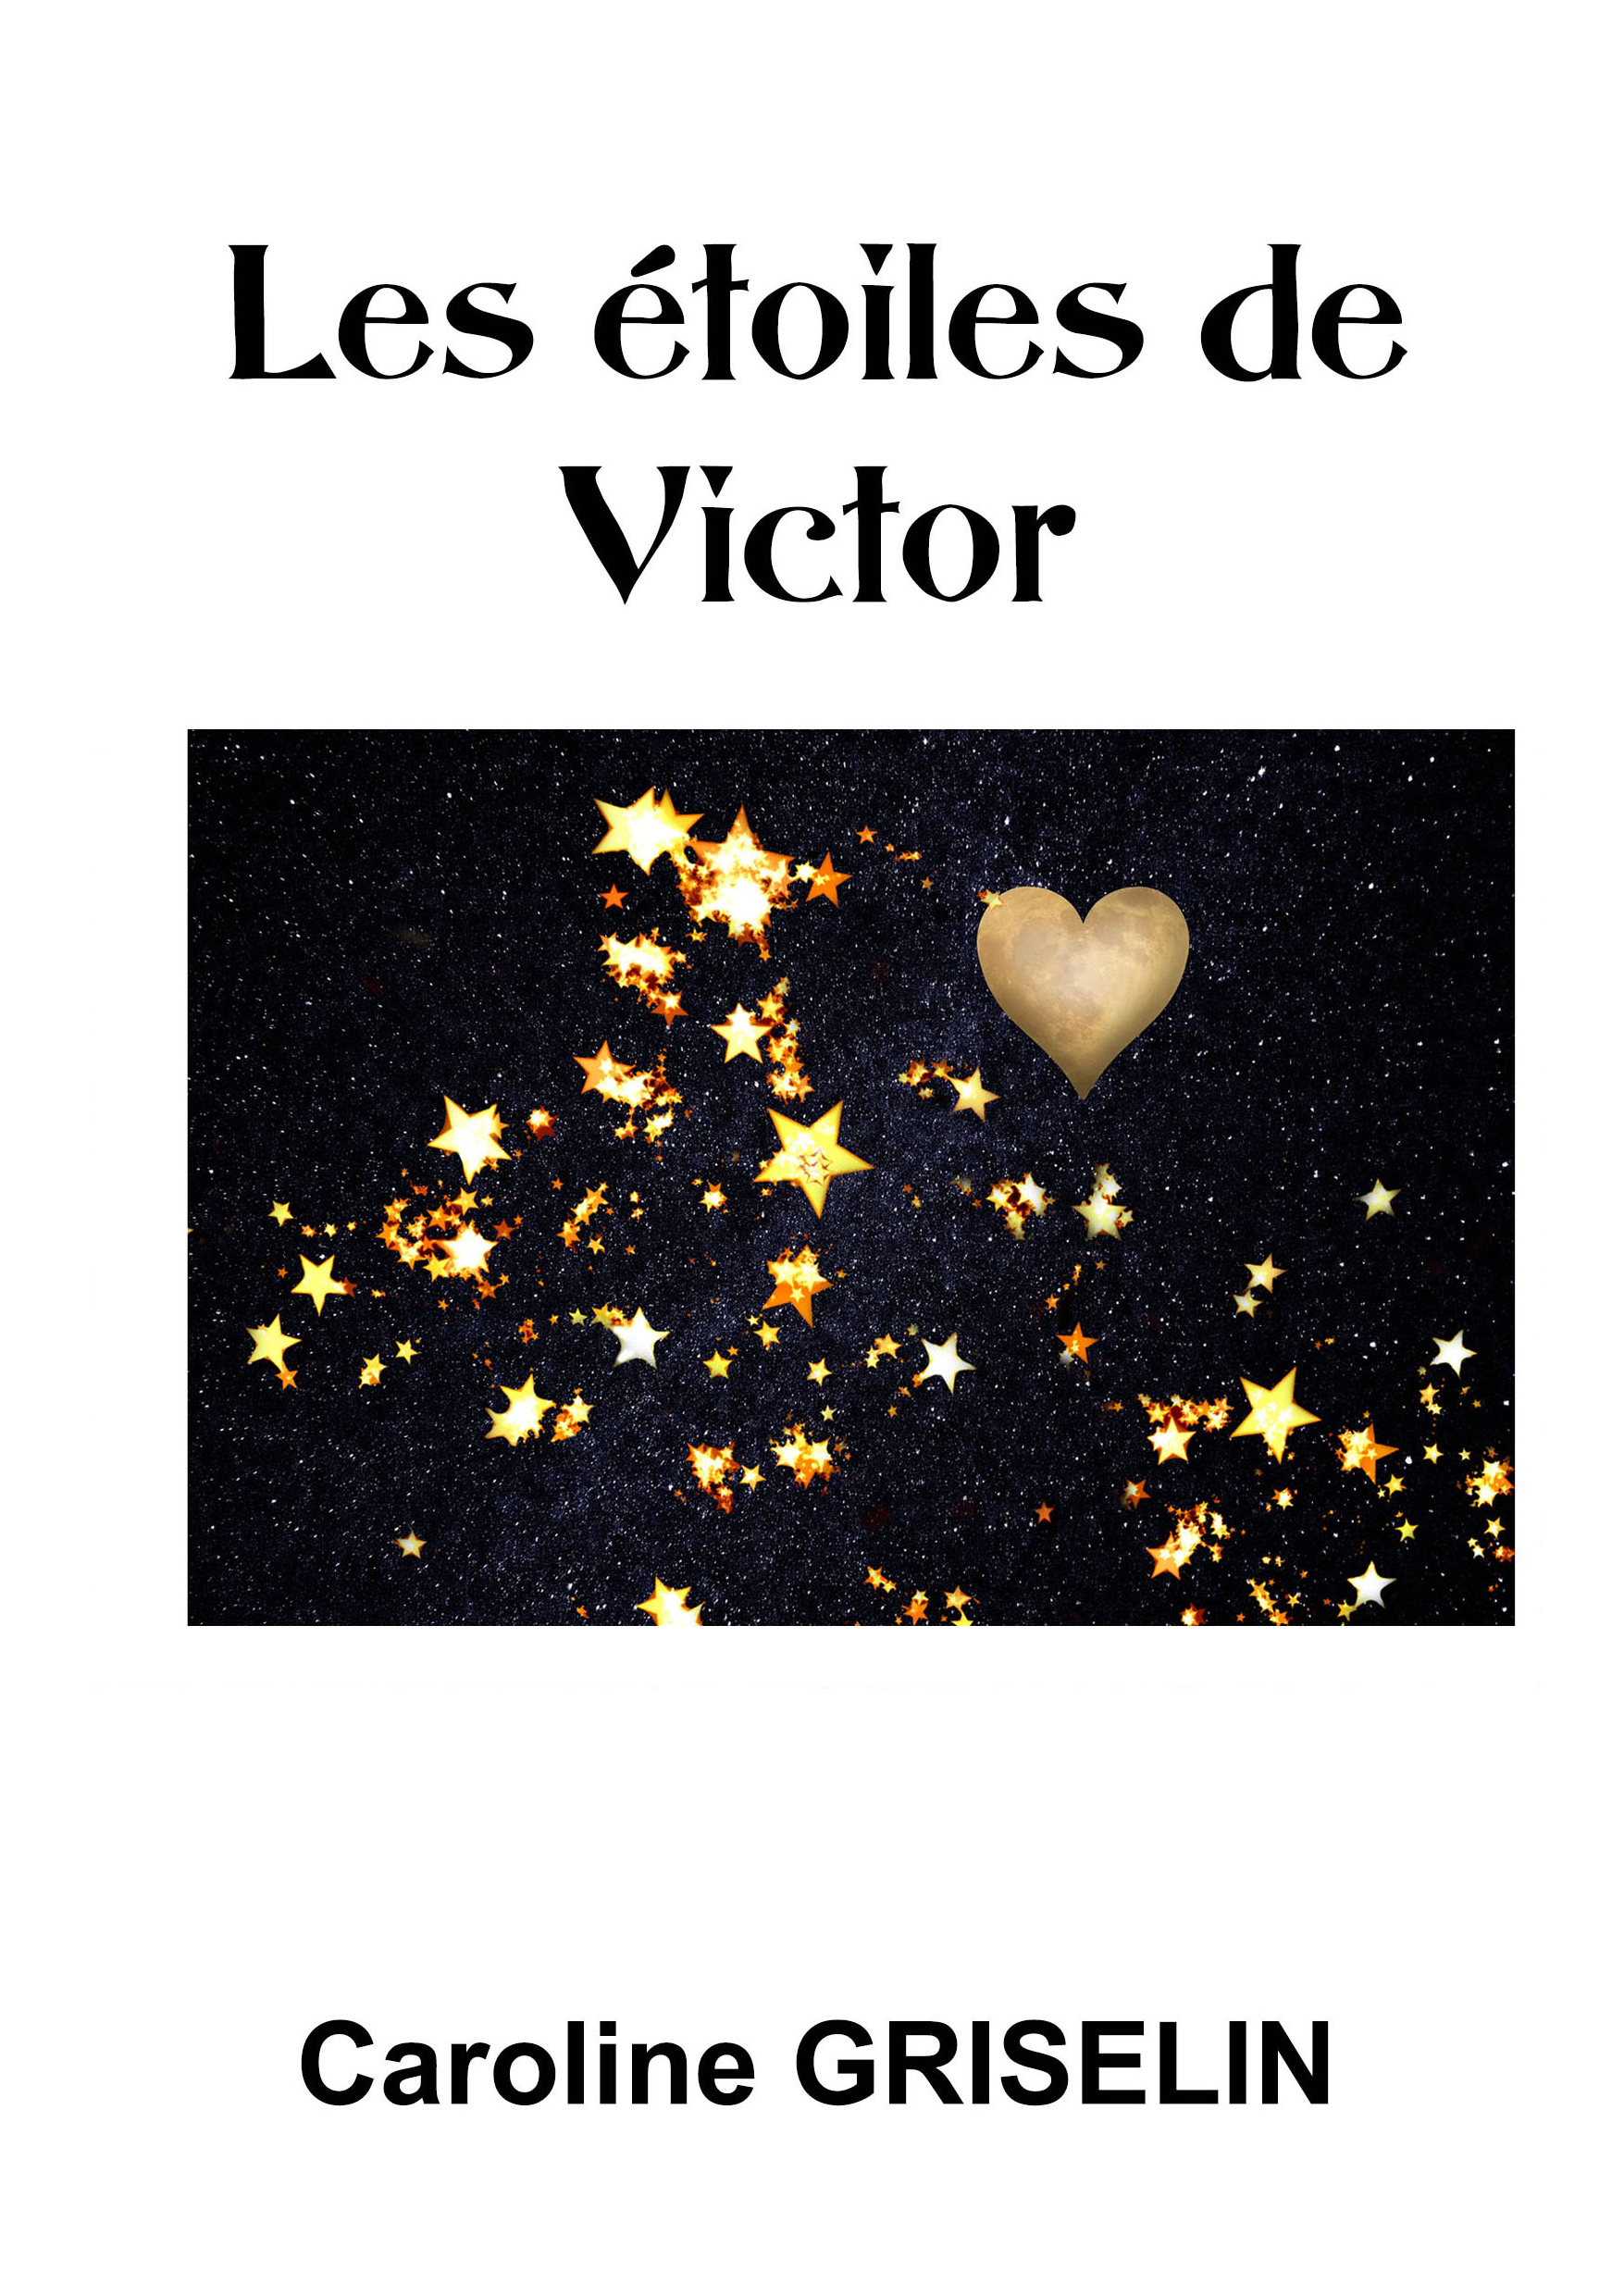 Les étoiles de Victor